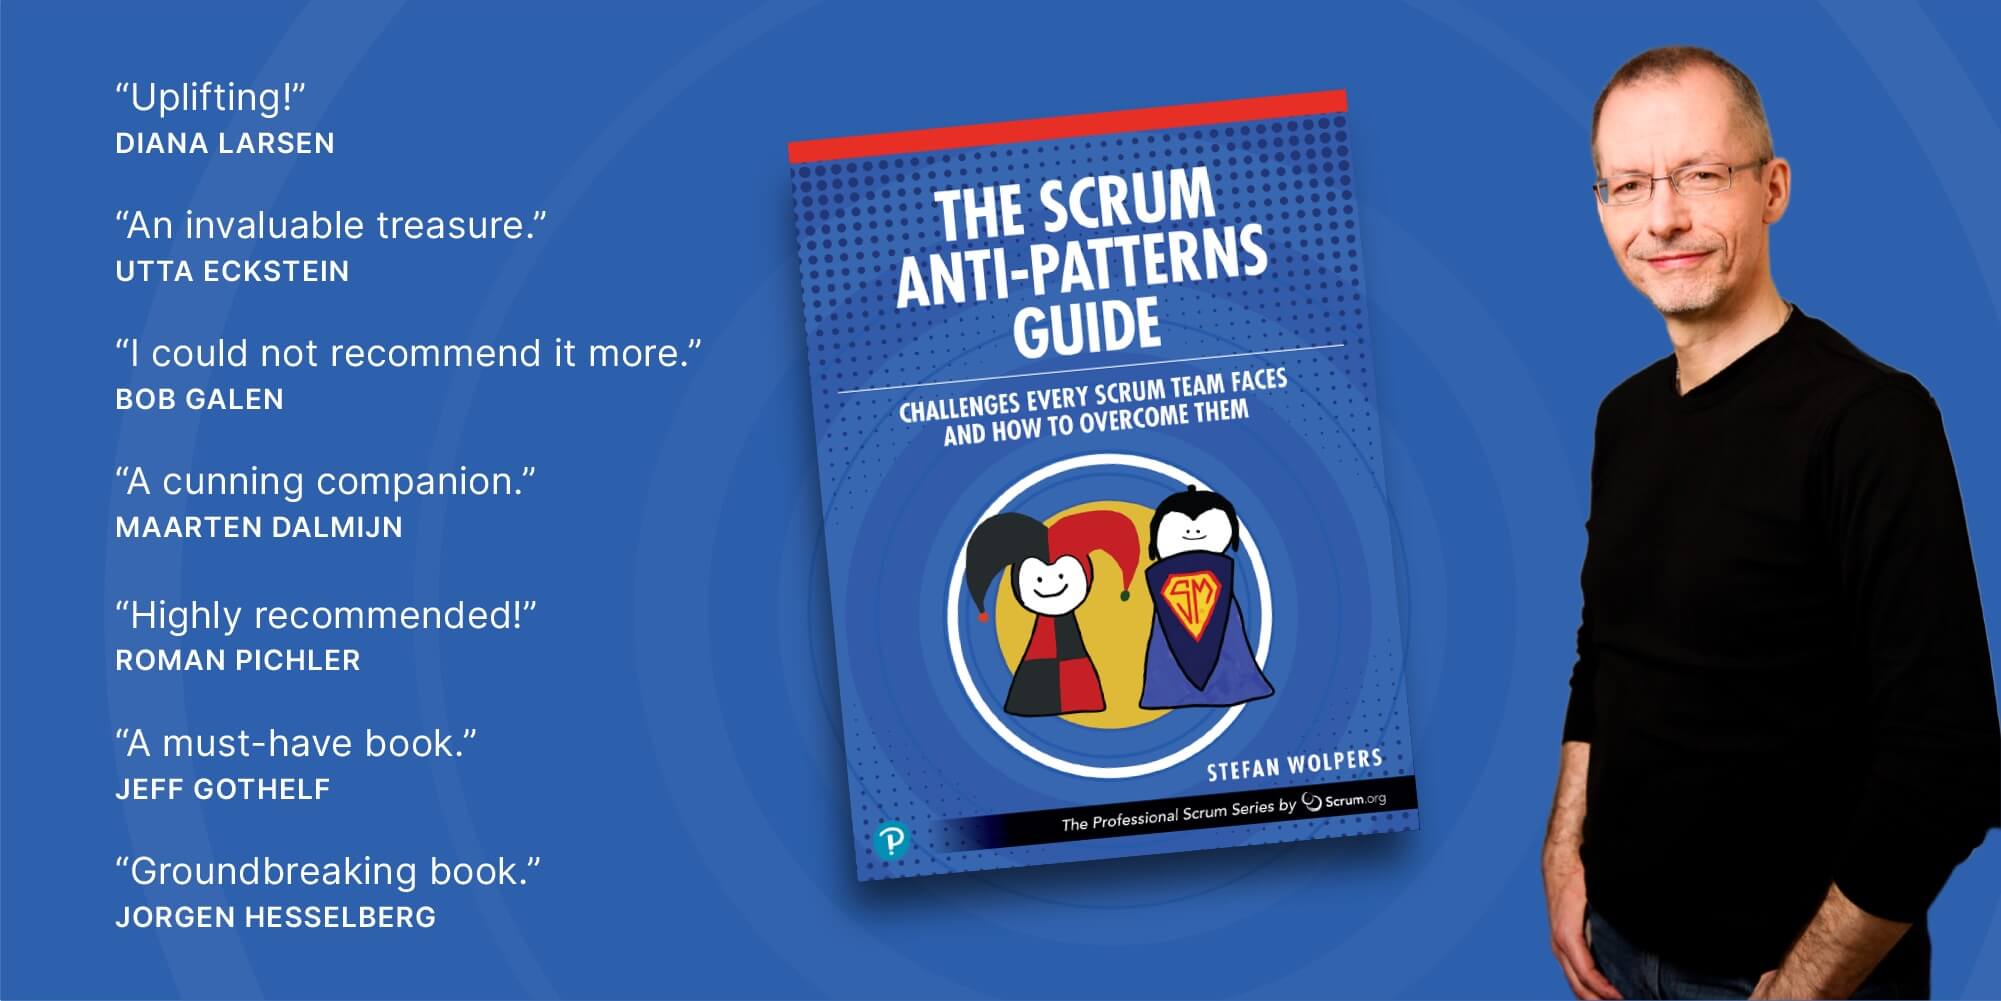 Professionelles Scrum Training mit PST Stefan Wolpers, Autor des Scrum Anti-Patterns Guide aus der Pearson Professional Scrum Series.